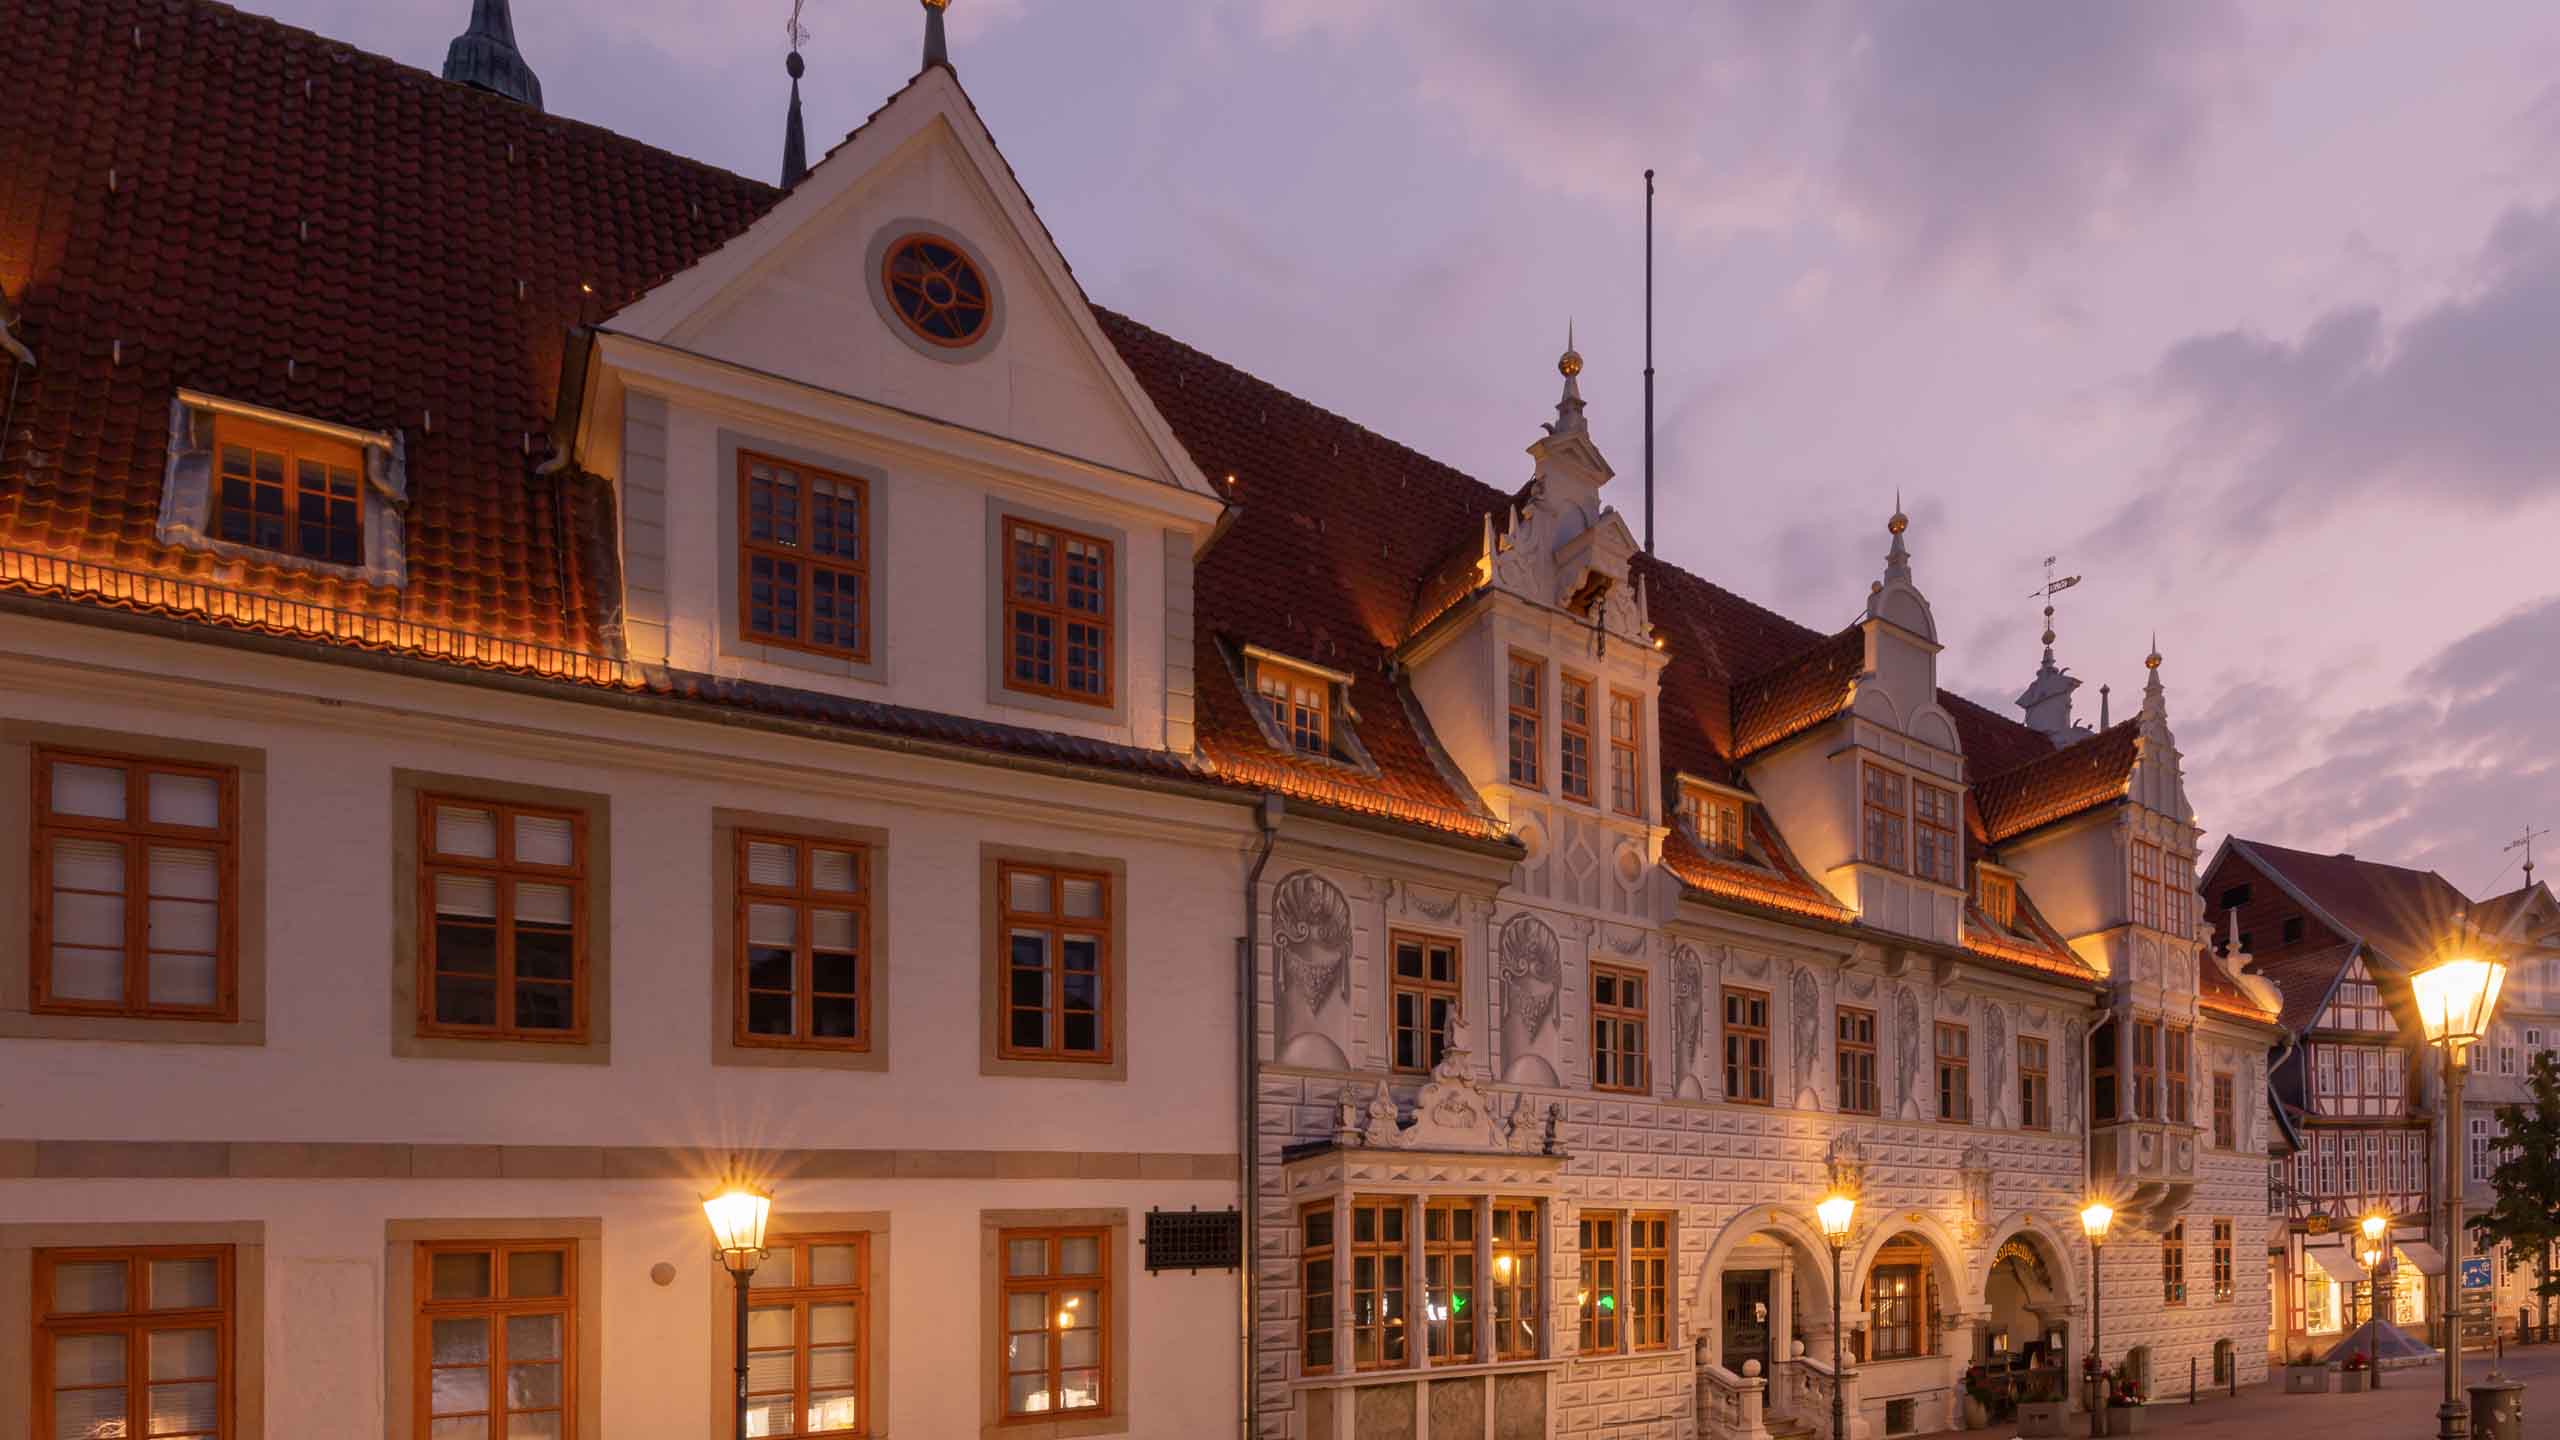 Bild vergrößern: Altes Rathaus in Celle am Abend